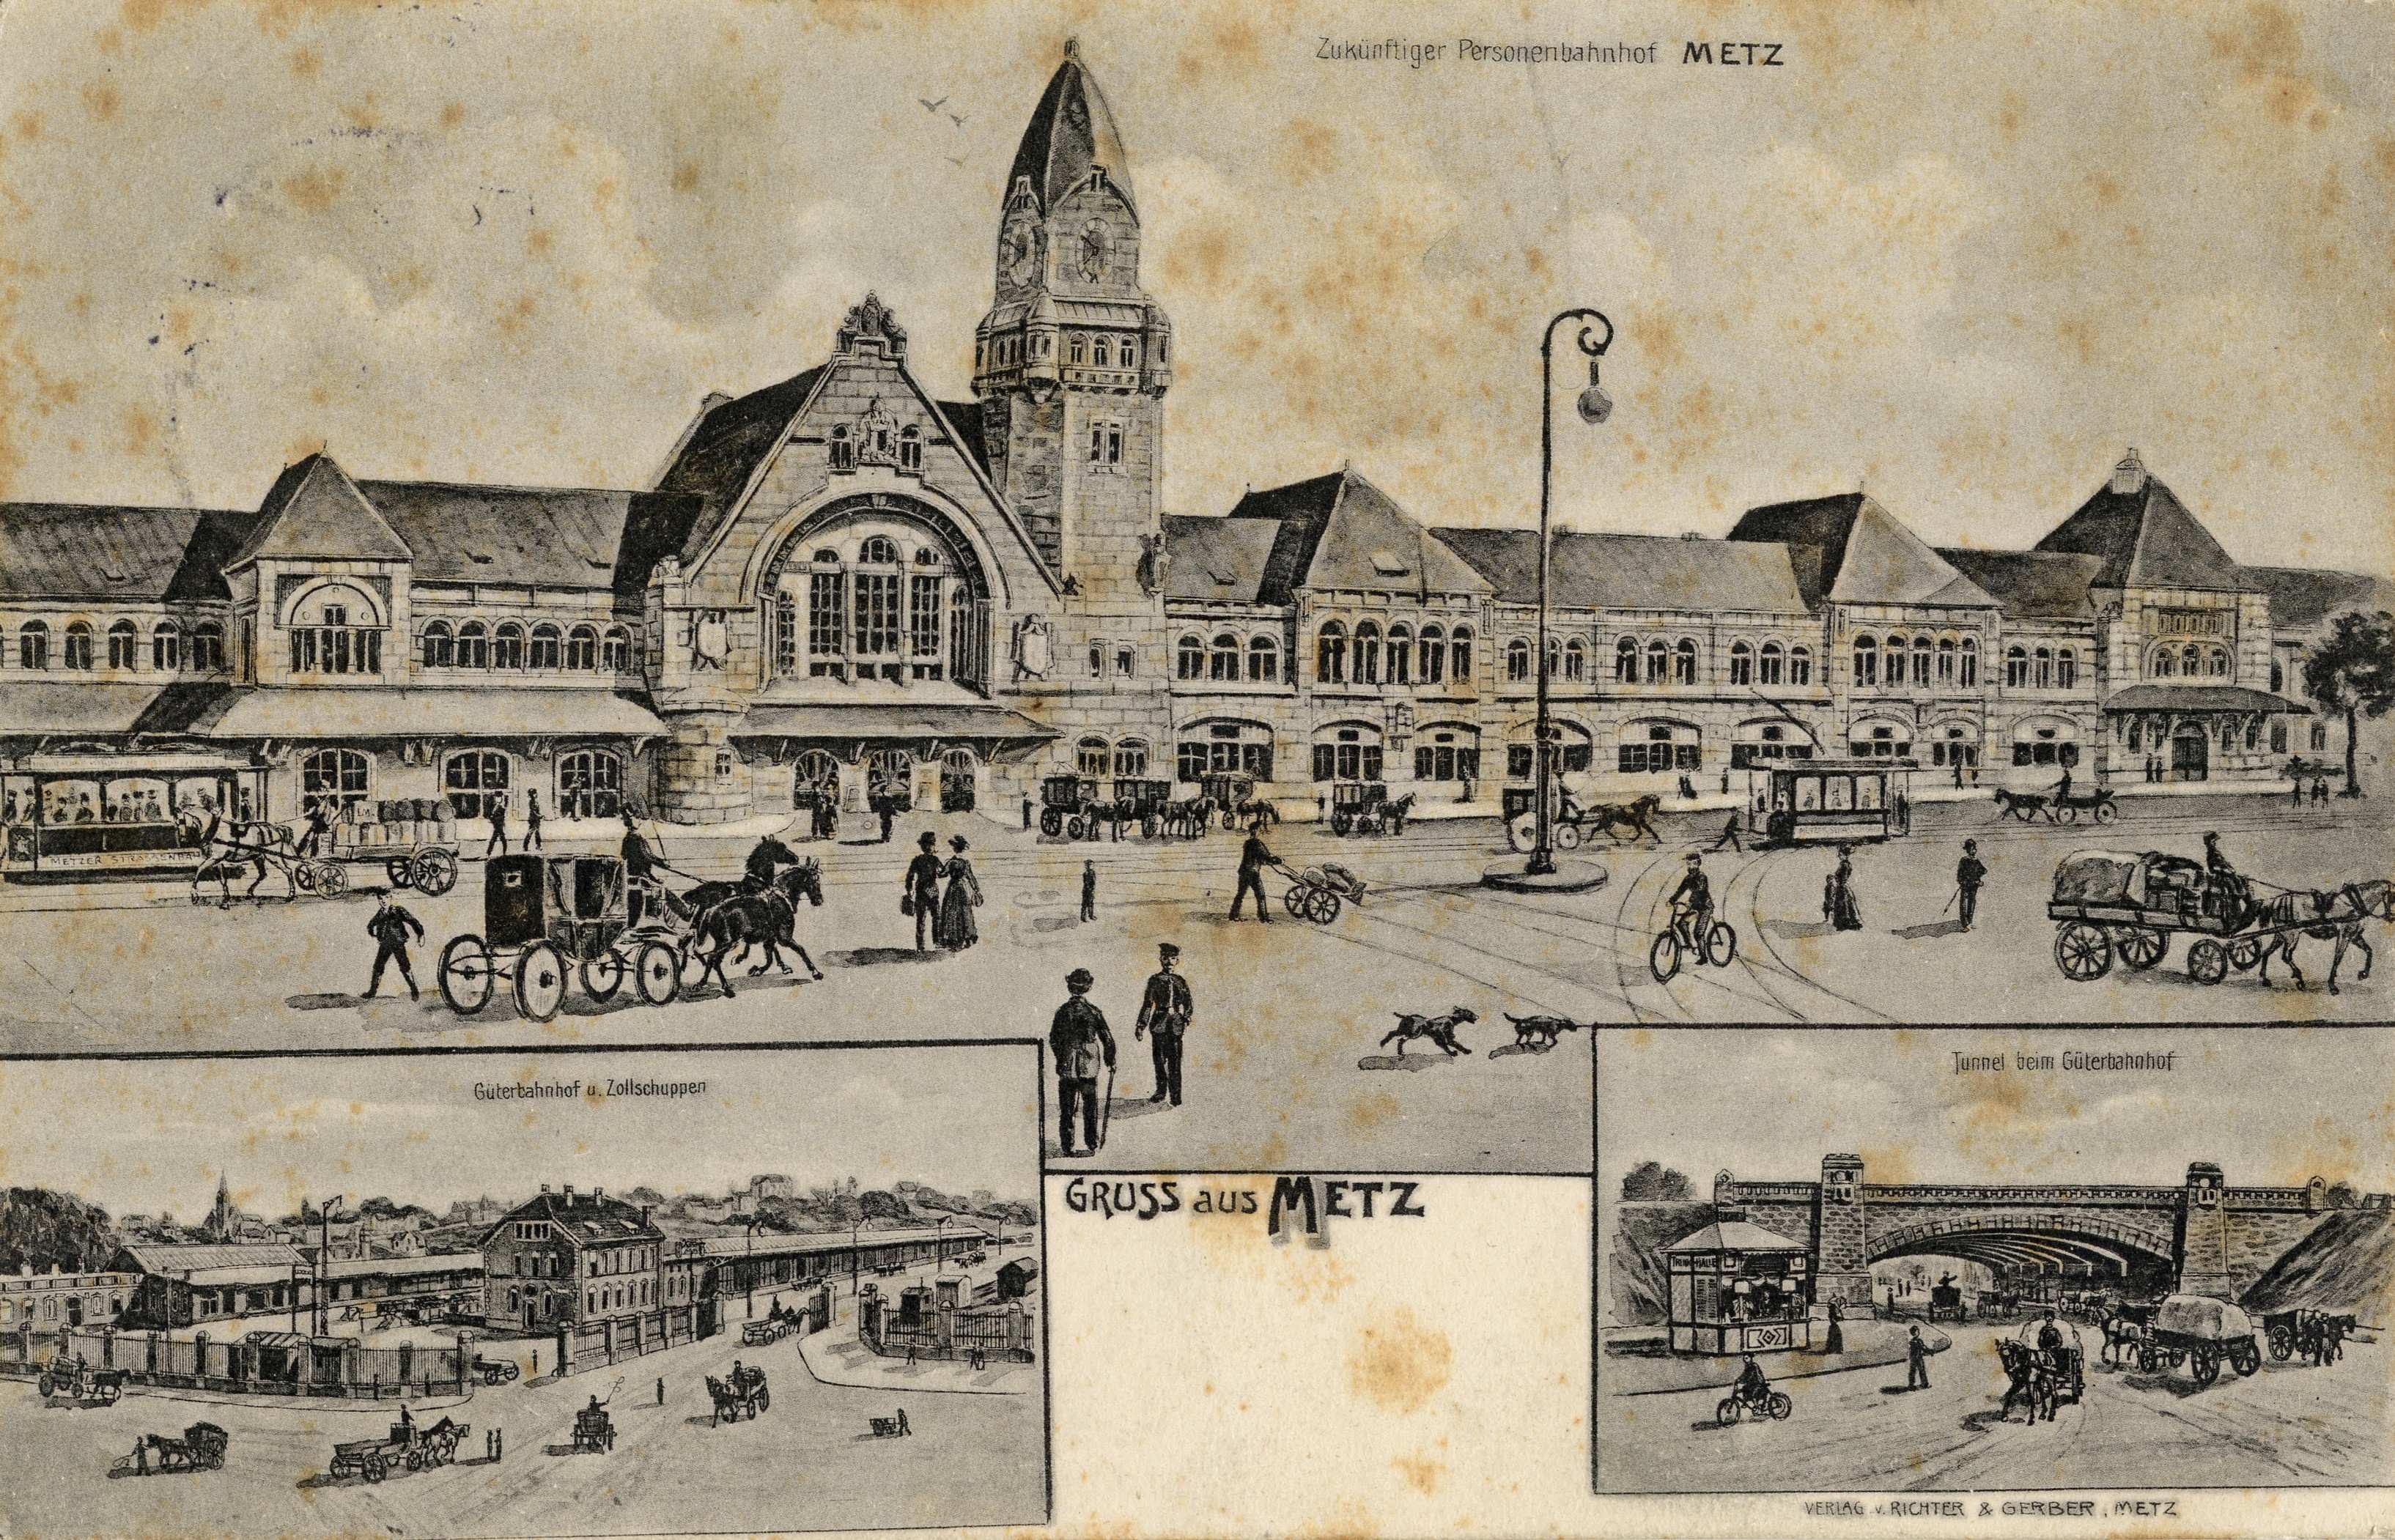 Contenu du Gruss aus Metz. Zukünftiger Personenbahnhof Metz